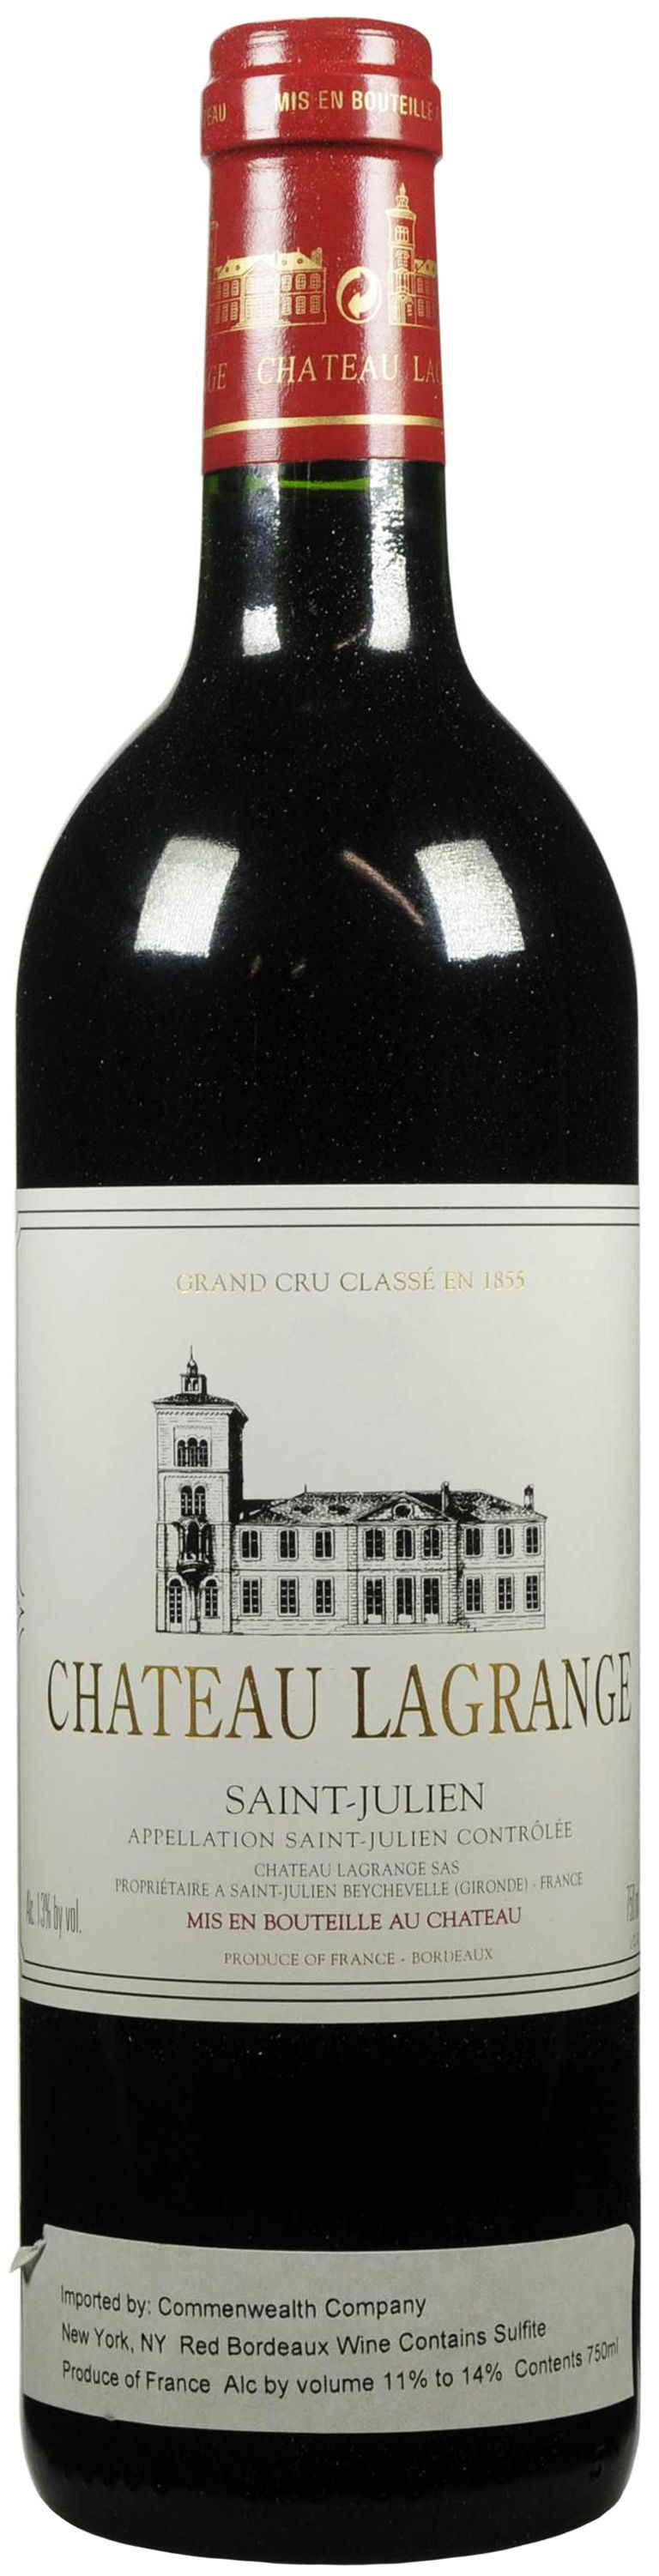 Chateau Lagrange, Grand Cru Classe, 2004